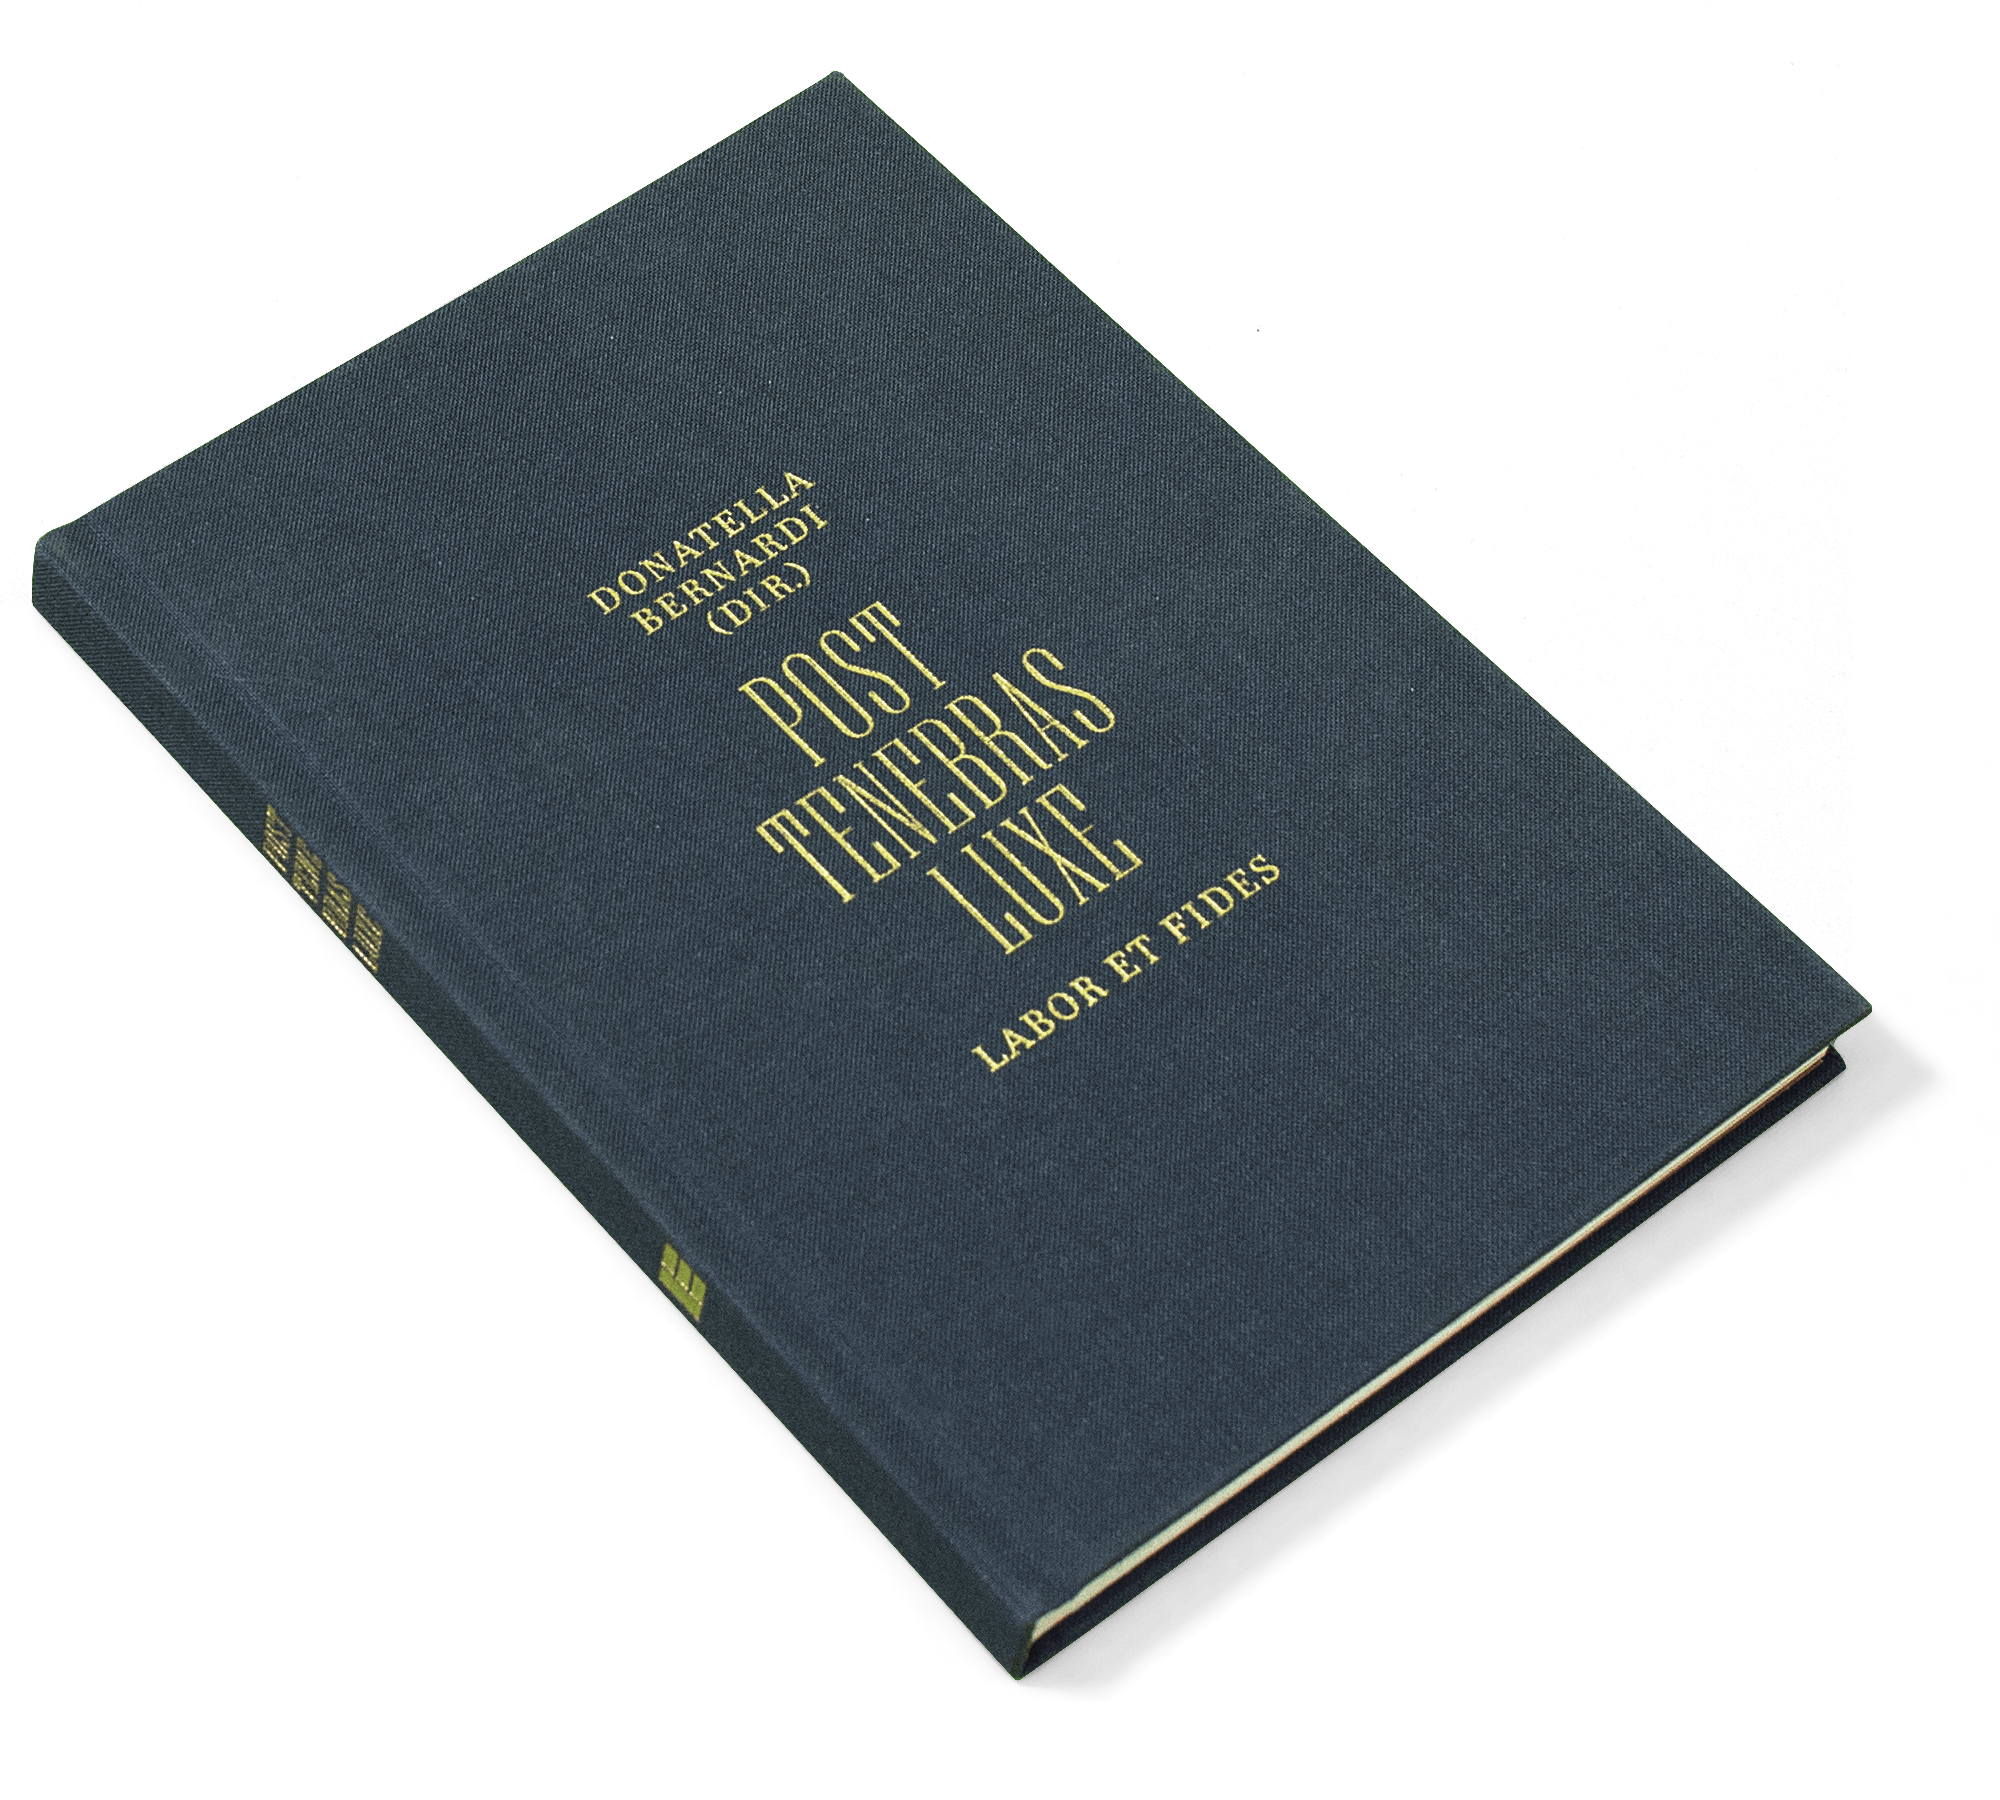 «Post Tenebras Luxe» est à la fois un livre sur le développement de la richesse et du protestantisme à Genève et le catalogue d’une exposition d'art contemporain au Musée Rath, commissariat: Donatella Bernardi. Publié par Labor et Fides, Genève. As Schönherwehrs.